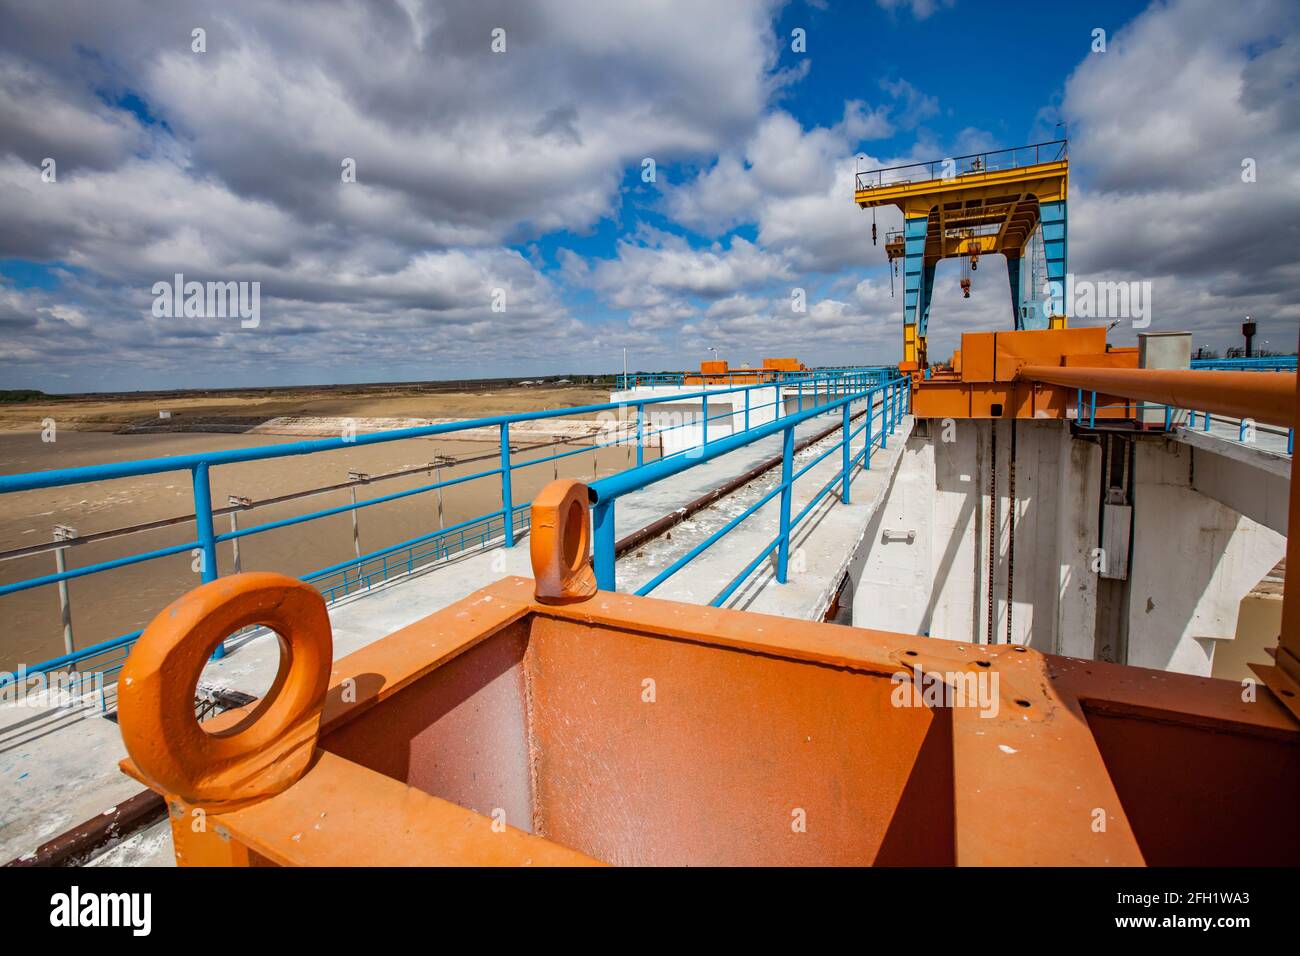 Shardara río dique. Puente de hormigón, grúa de gentry. Cambiador de velocidad naranja en primer plano. Cielo azul con nubes.Ciudad de Kazaly, región de Kyzylorda, Kazajistán. Foto de stock